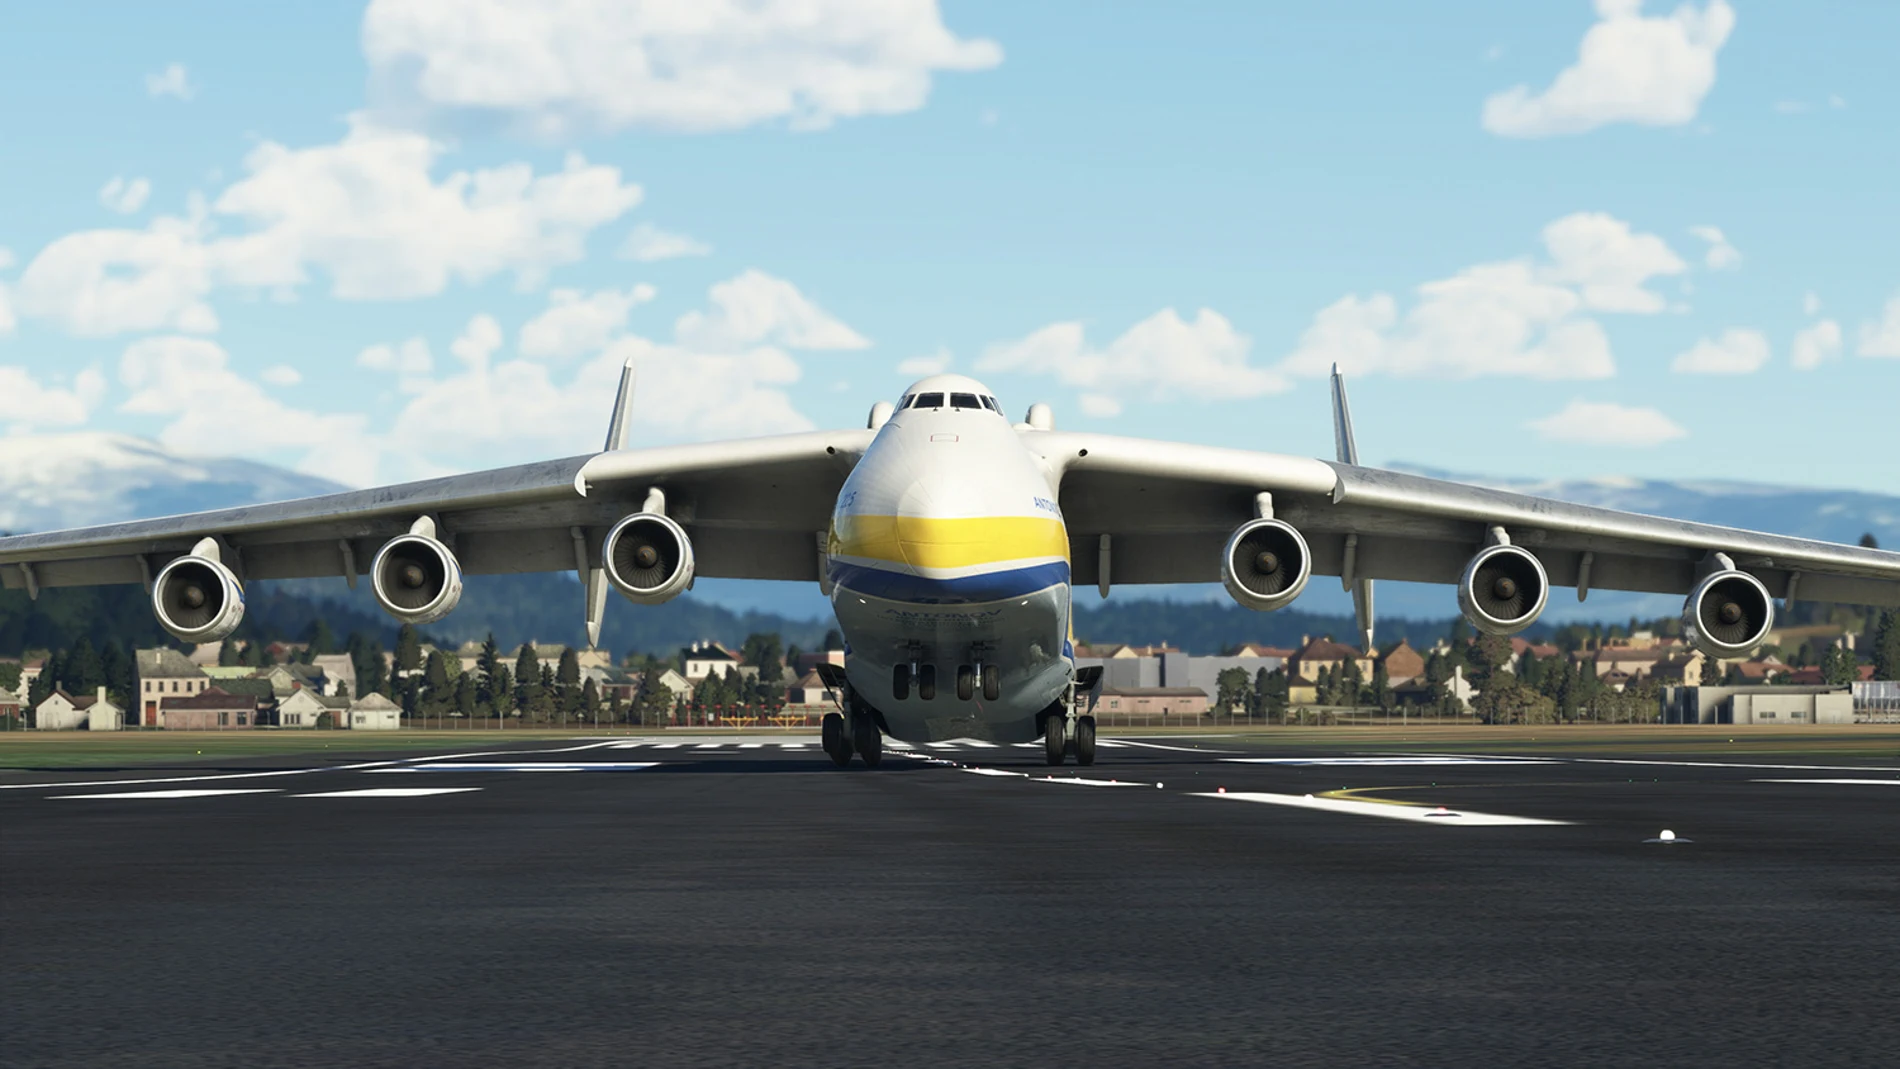 Antonov An-225 "Mriya" sobre tierra, en el videojuego.